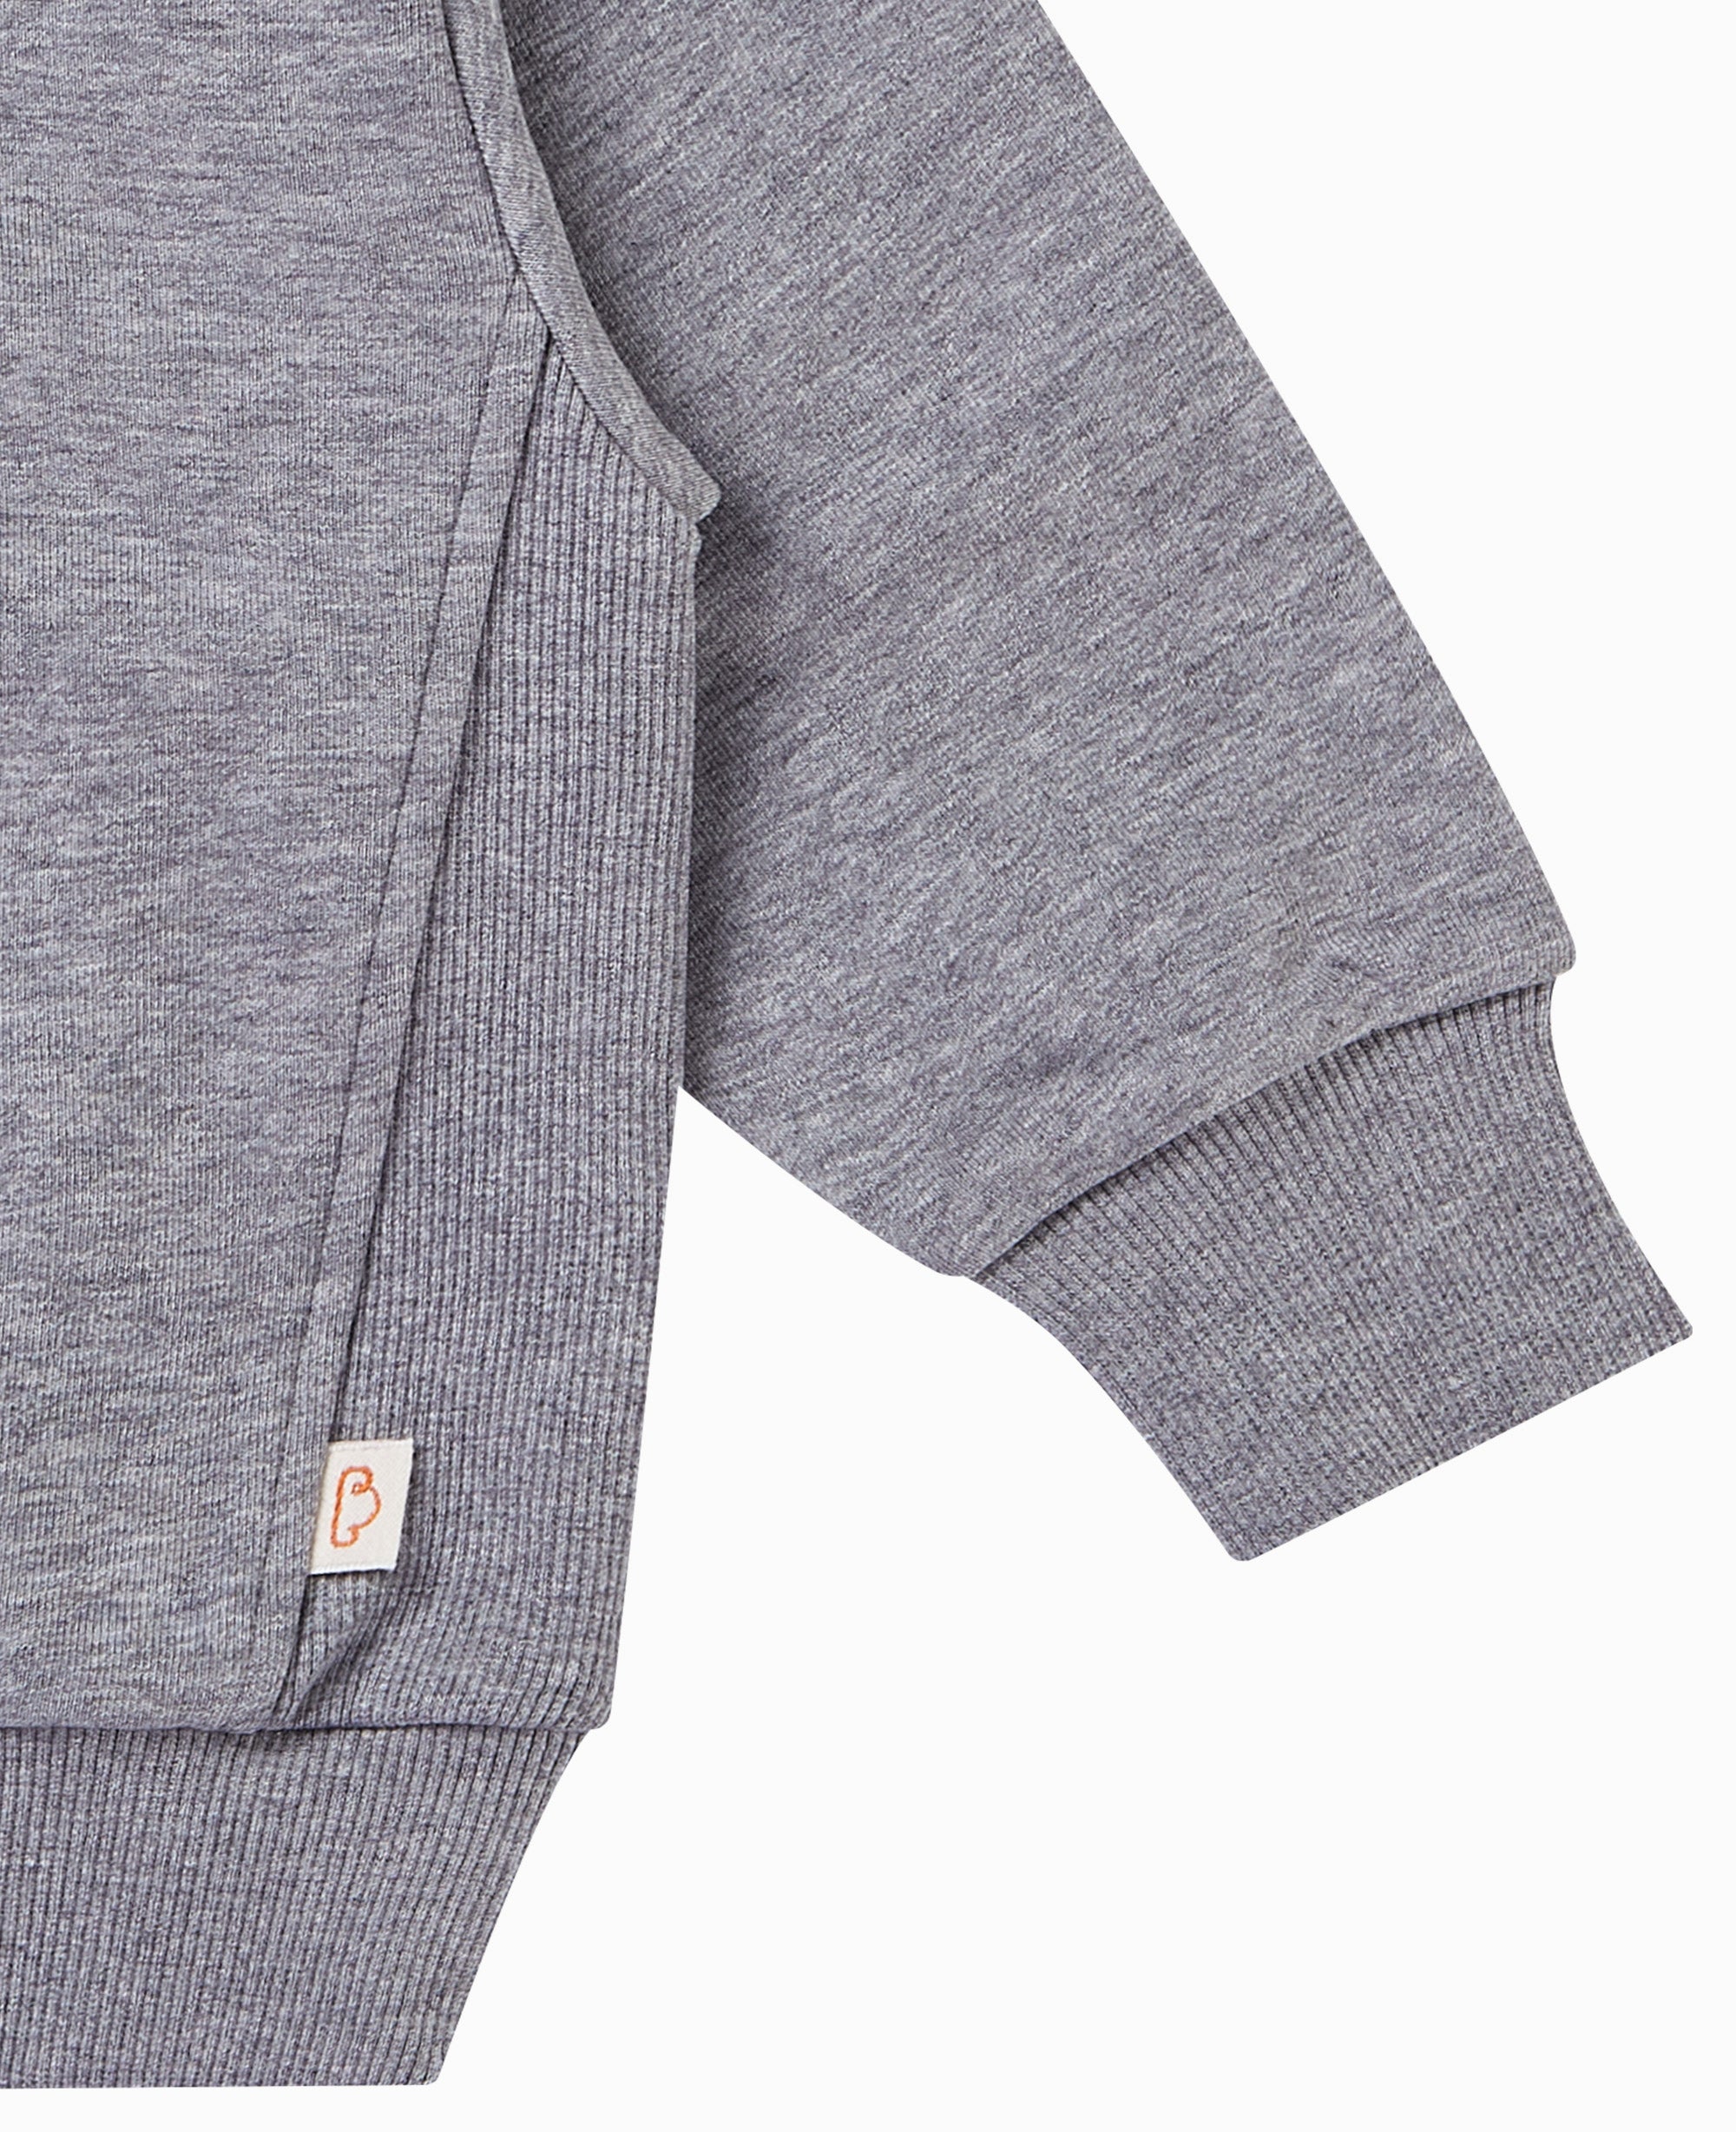 French Terry Hooded Sweatshirt - Slate Grey